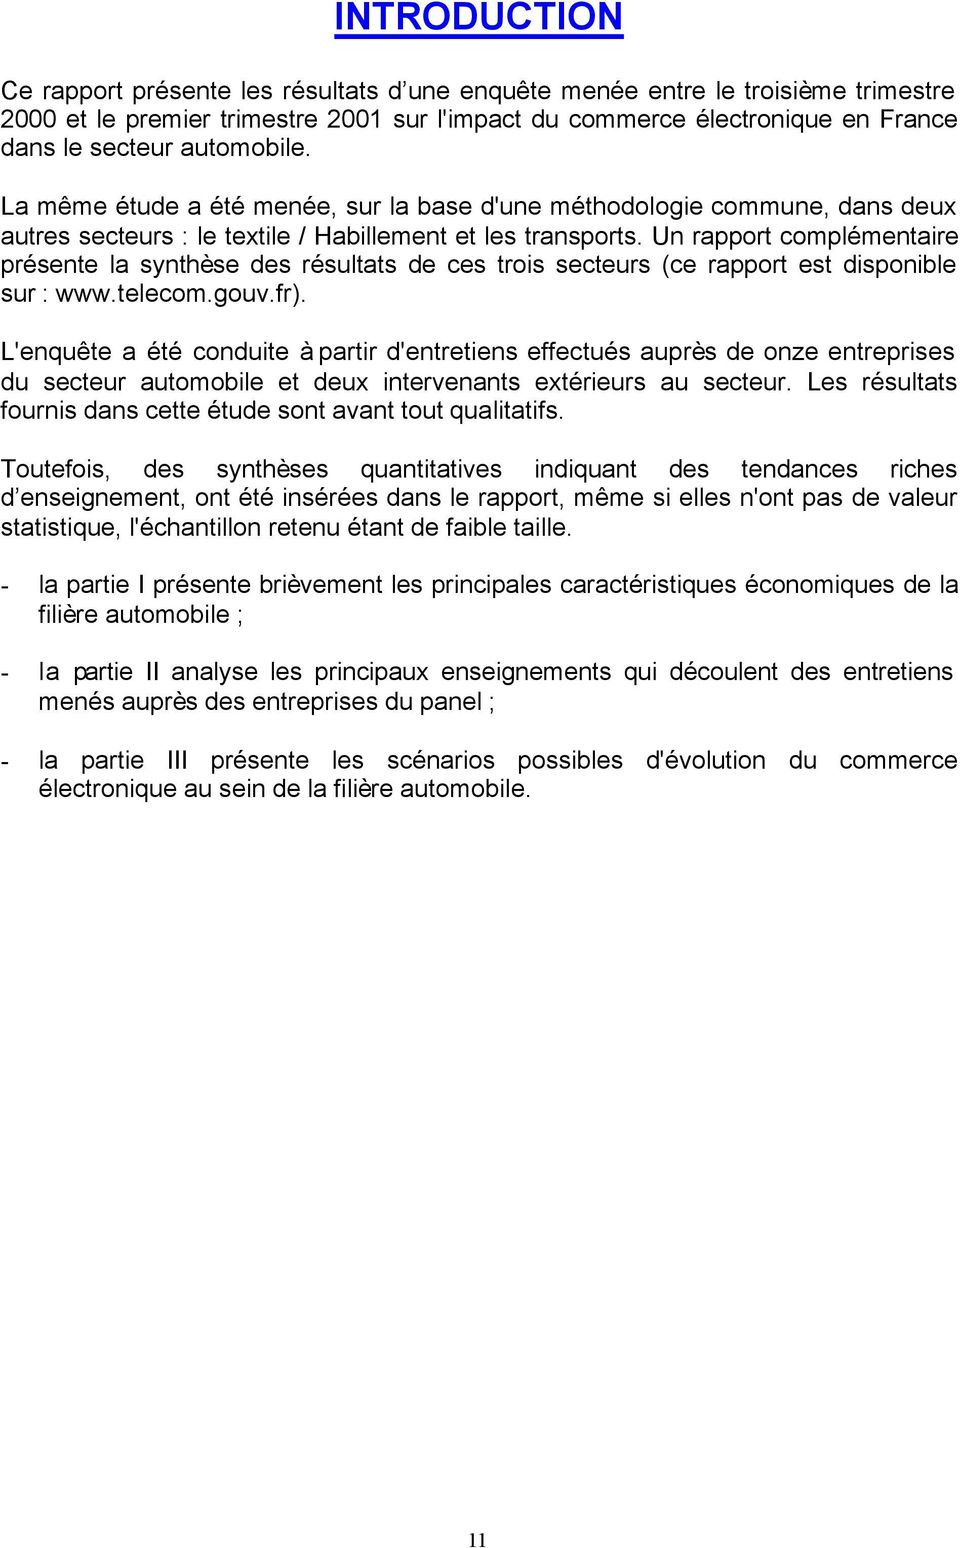 Un rapport complémentaire présente la synthèse des résultats de ces trois secteurs (ce rapport est disponible sur : www.telecom.gouv.fr).